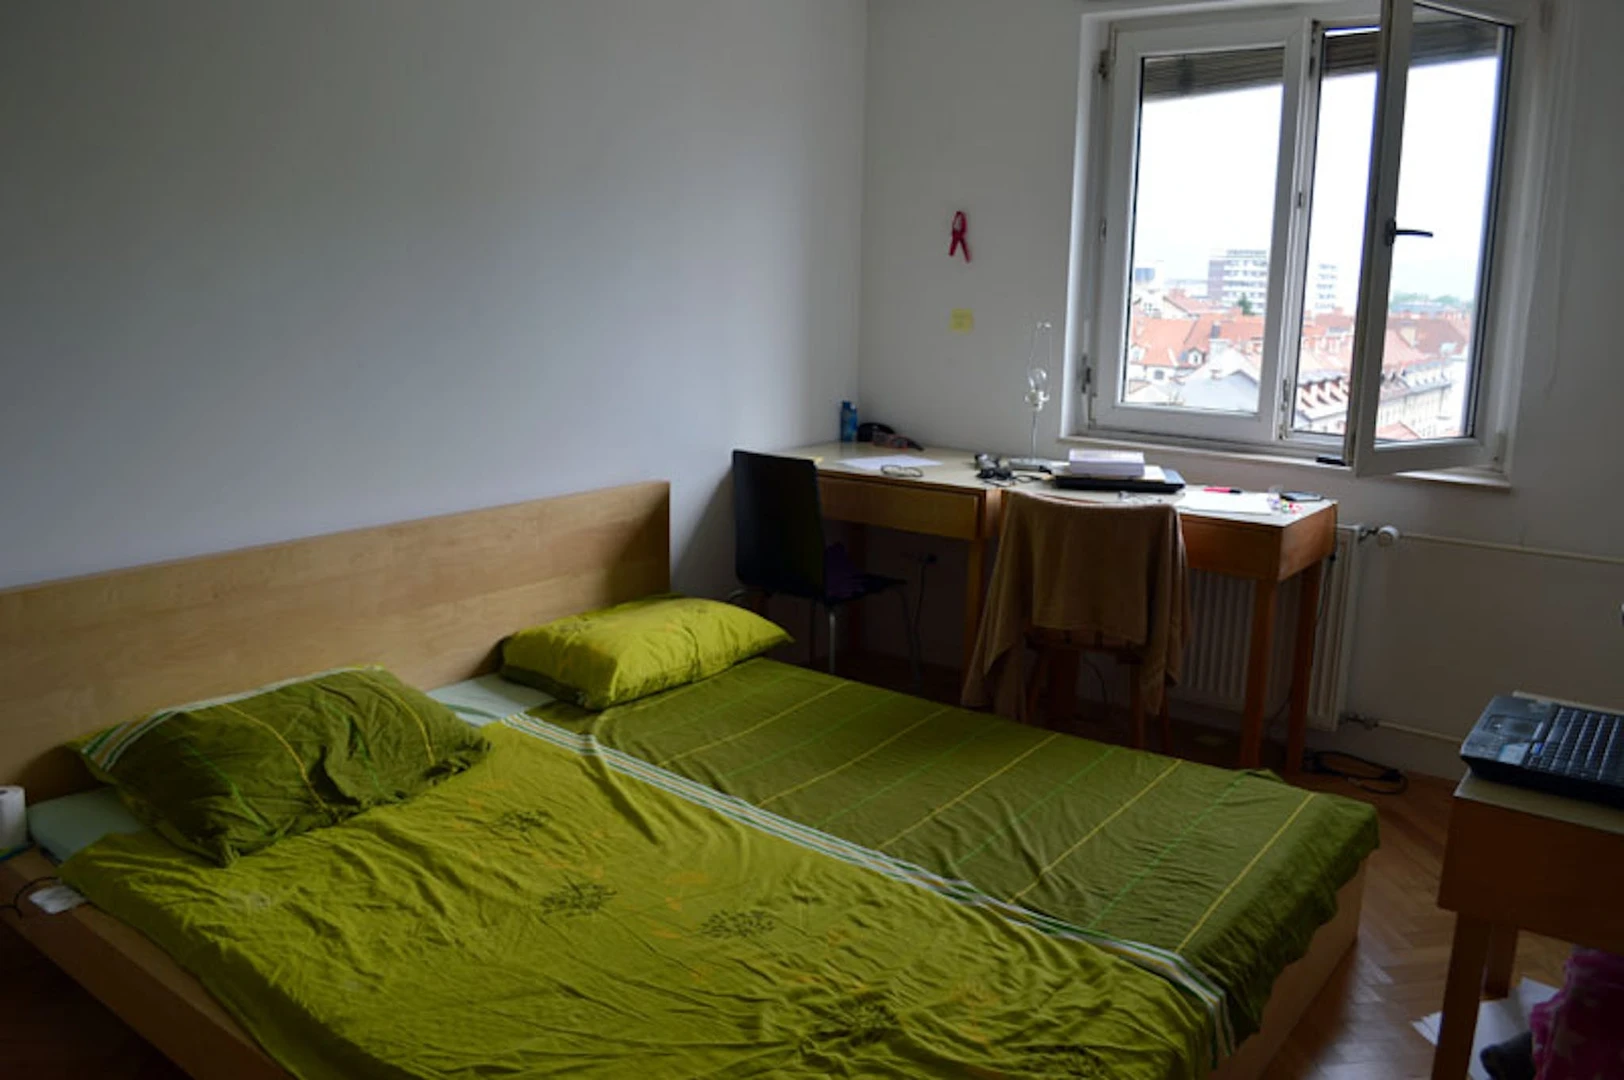 Quarto para alugar com cama de casal em Liubliana